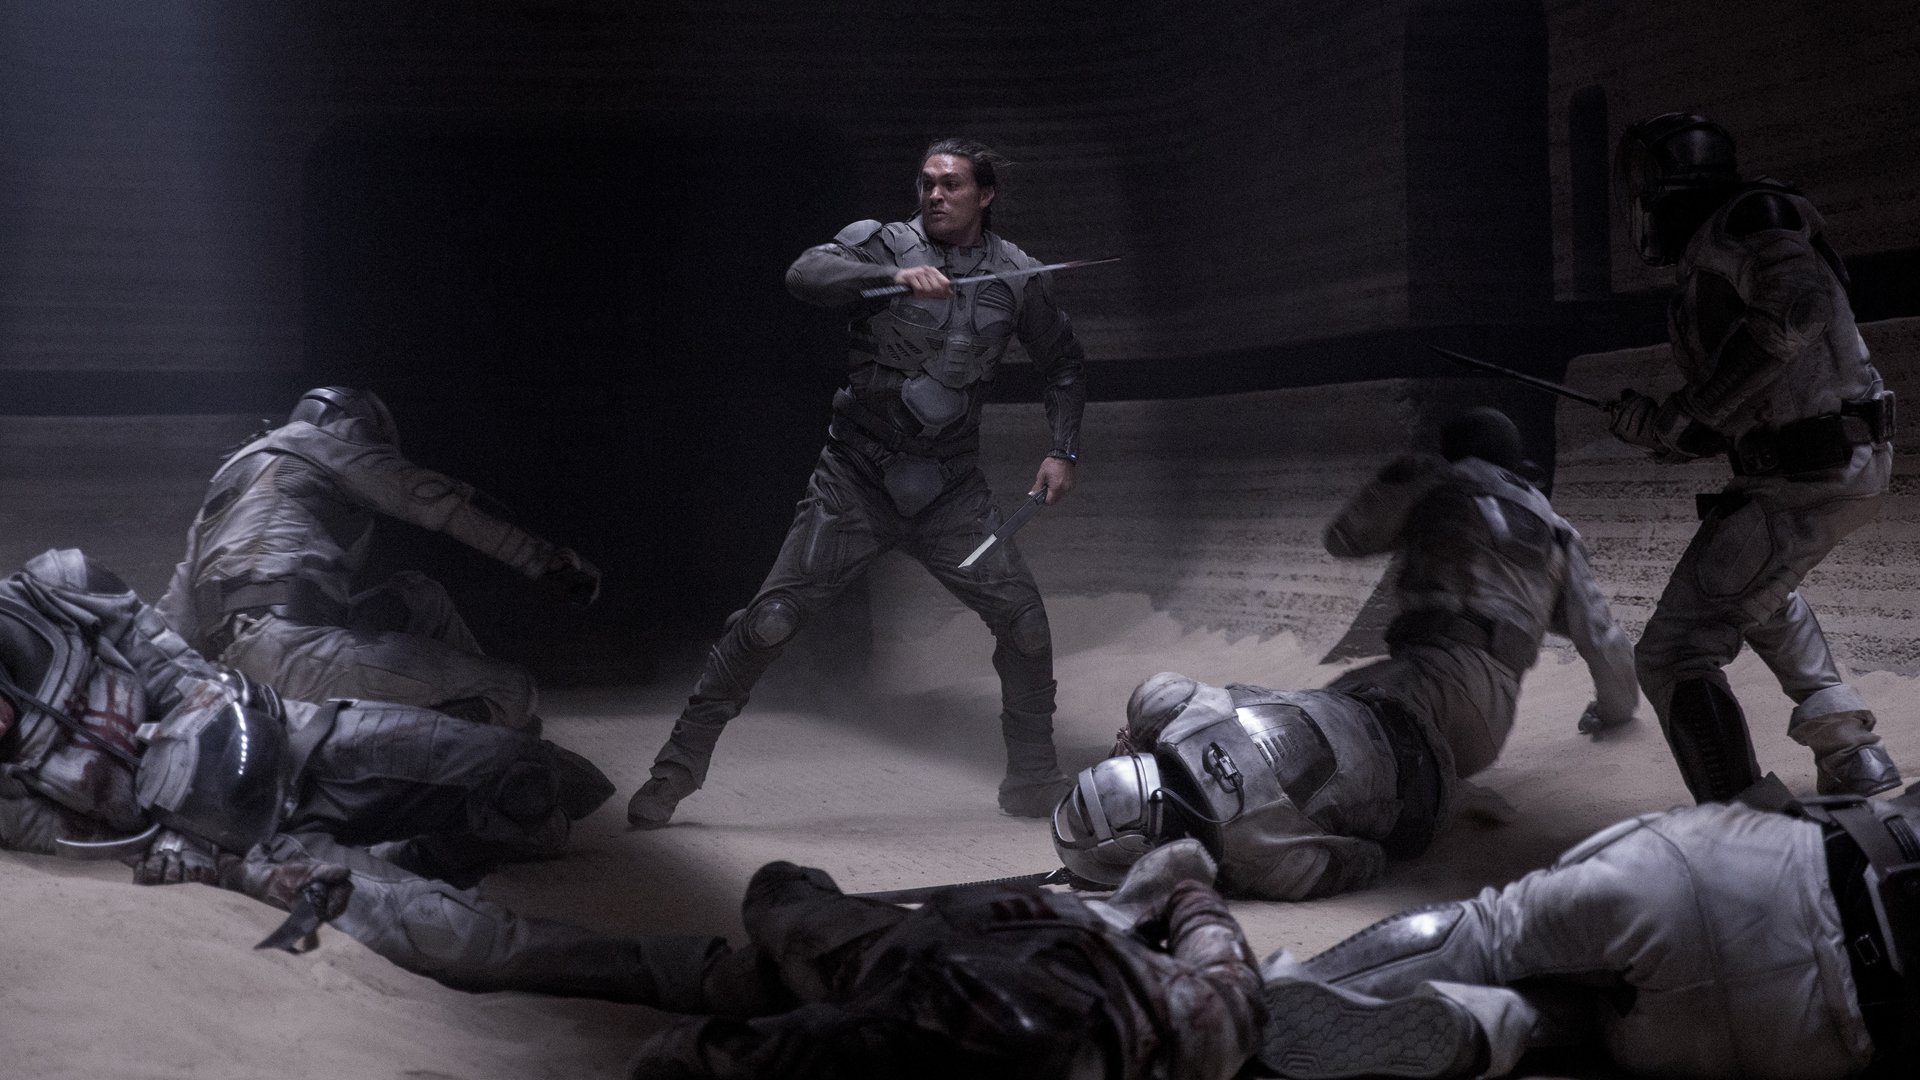 Duncan Idaho de Jason Momoa se enfrenta a varios enemigos en Dune fight